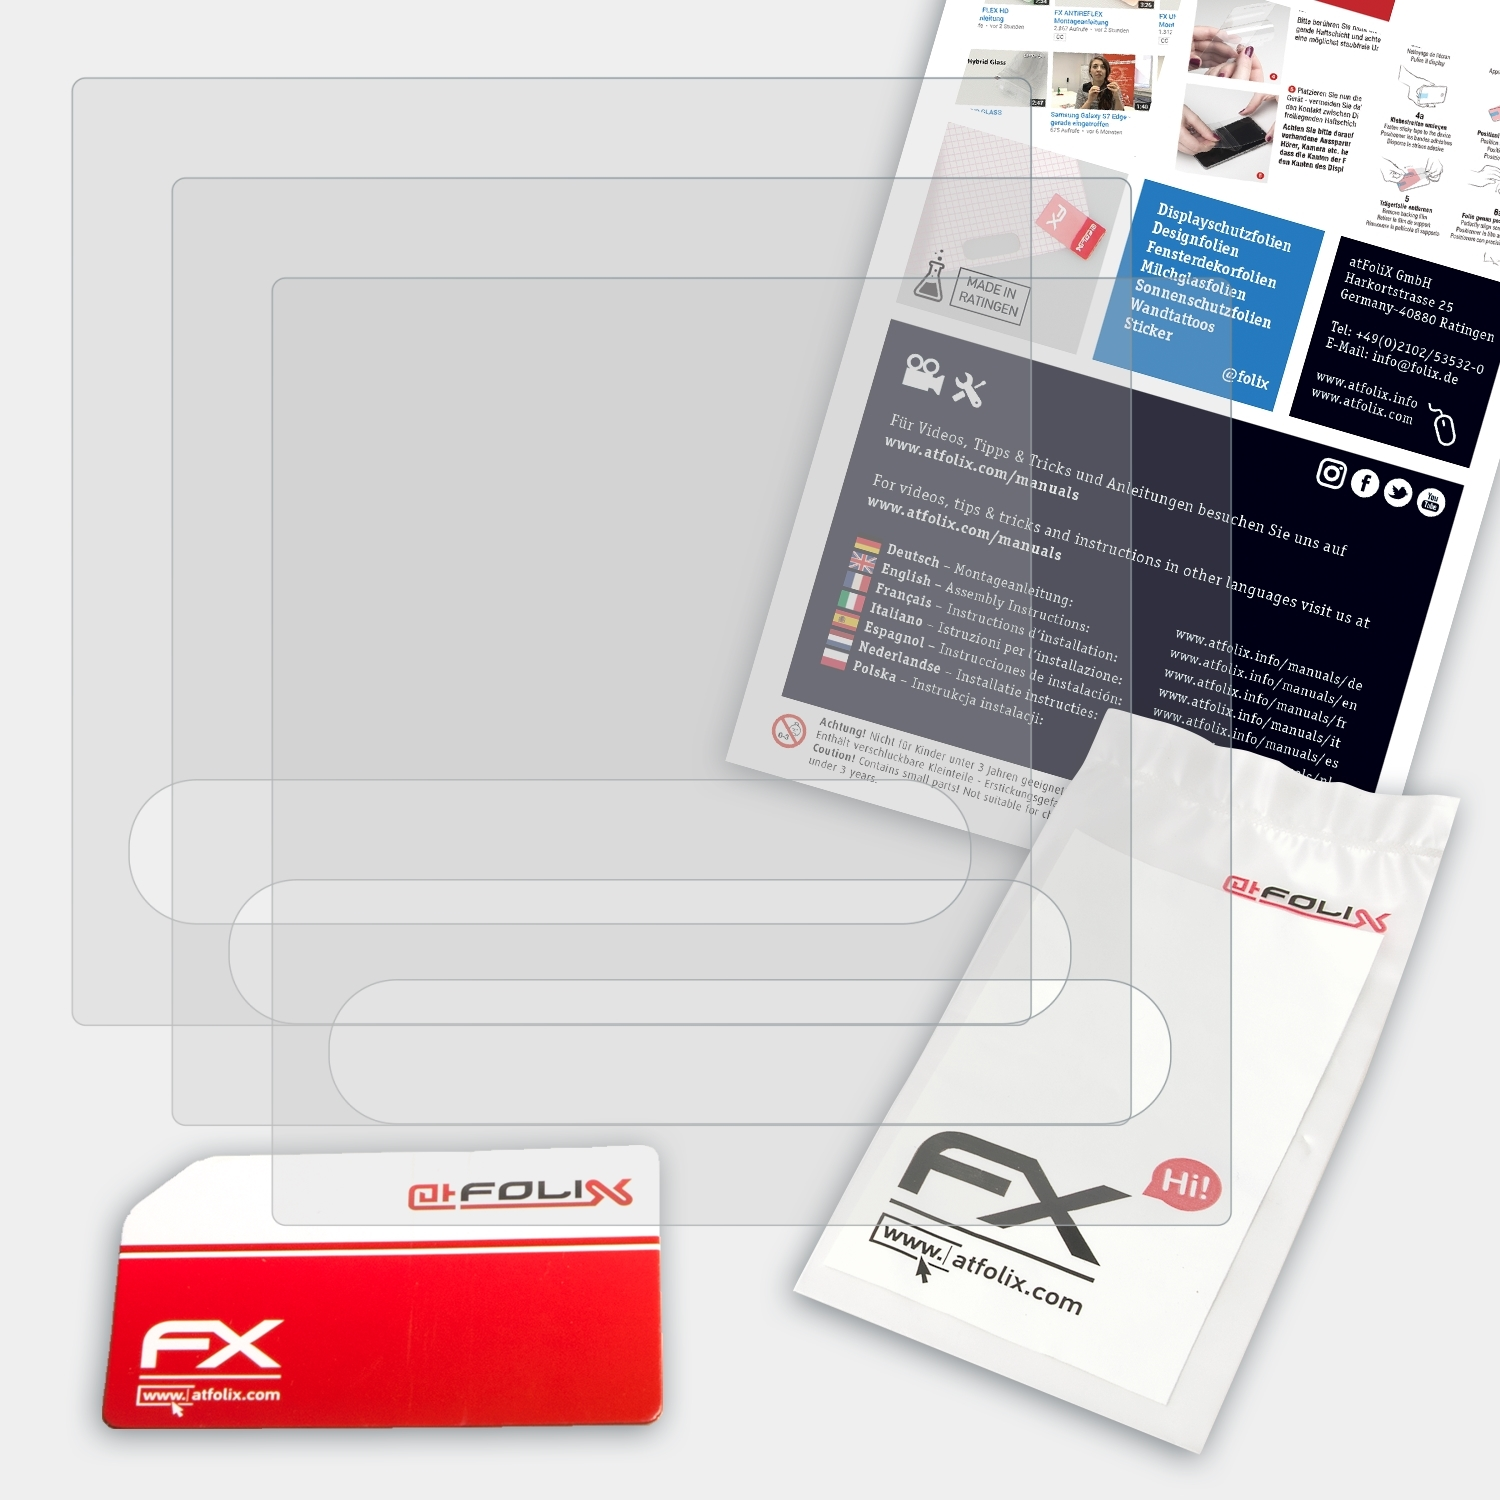 ATFOLIX 3x FX-Antireflex Medion E85032 (MD87248)) Displayschutz(für